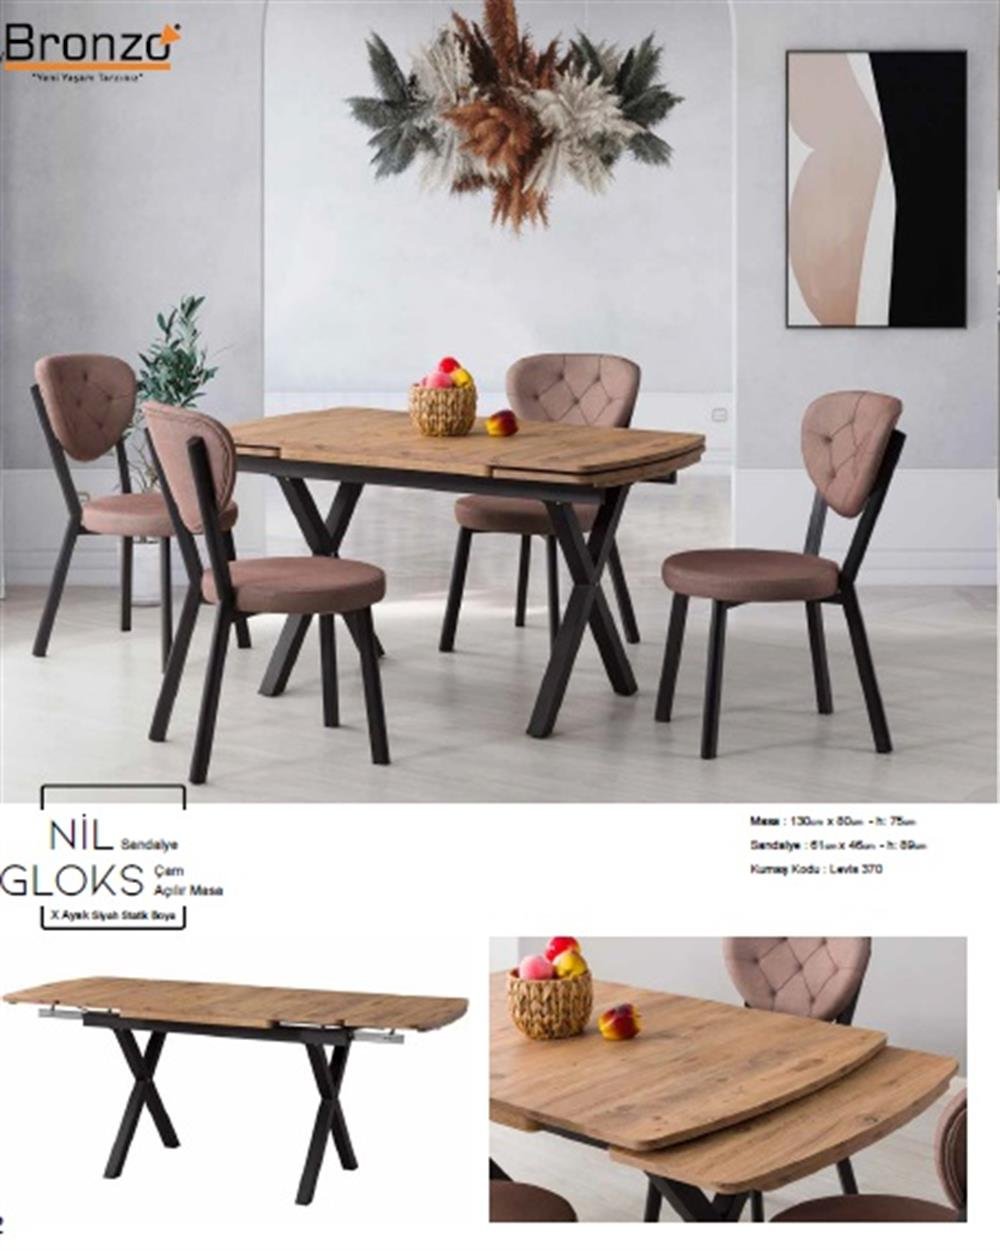 Bronzo NİL Sandalye - GLOKS Çam Açılı MasaTakım gri mermer masa takımı,  yemek masası takımı, emek masası özellikleri,, yemek masası çeşitleri,  Mutfak masası çeşitleri, Mutfak masası renkleri, Yemek masası fiyatları,  kütük yemek